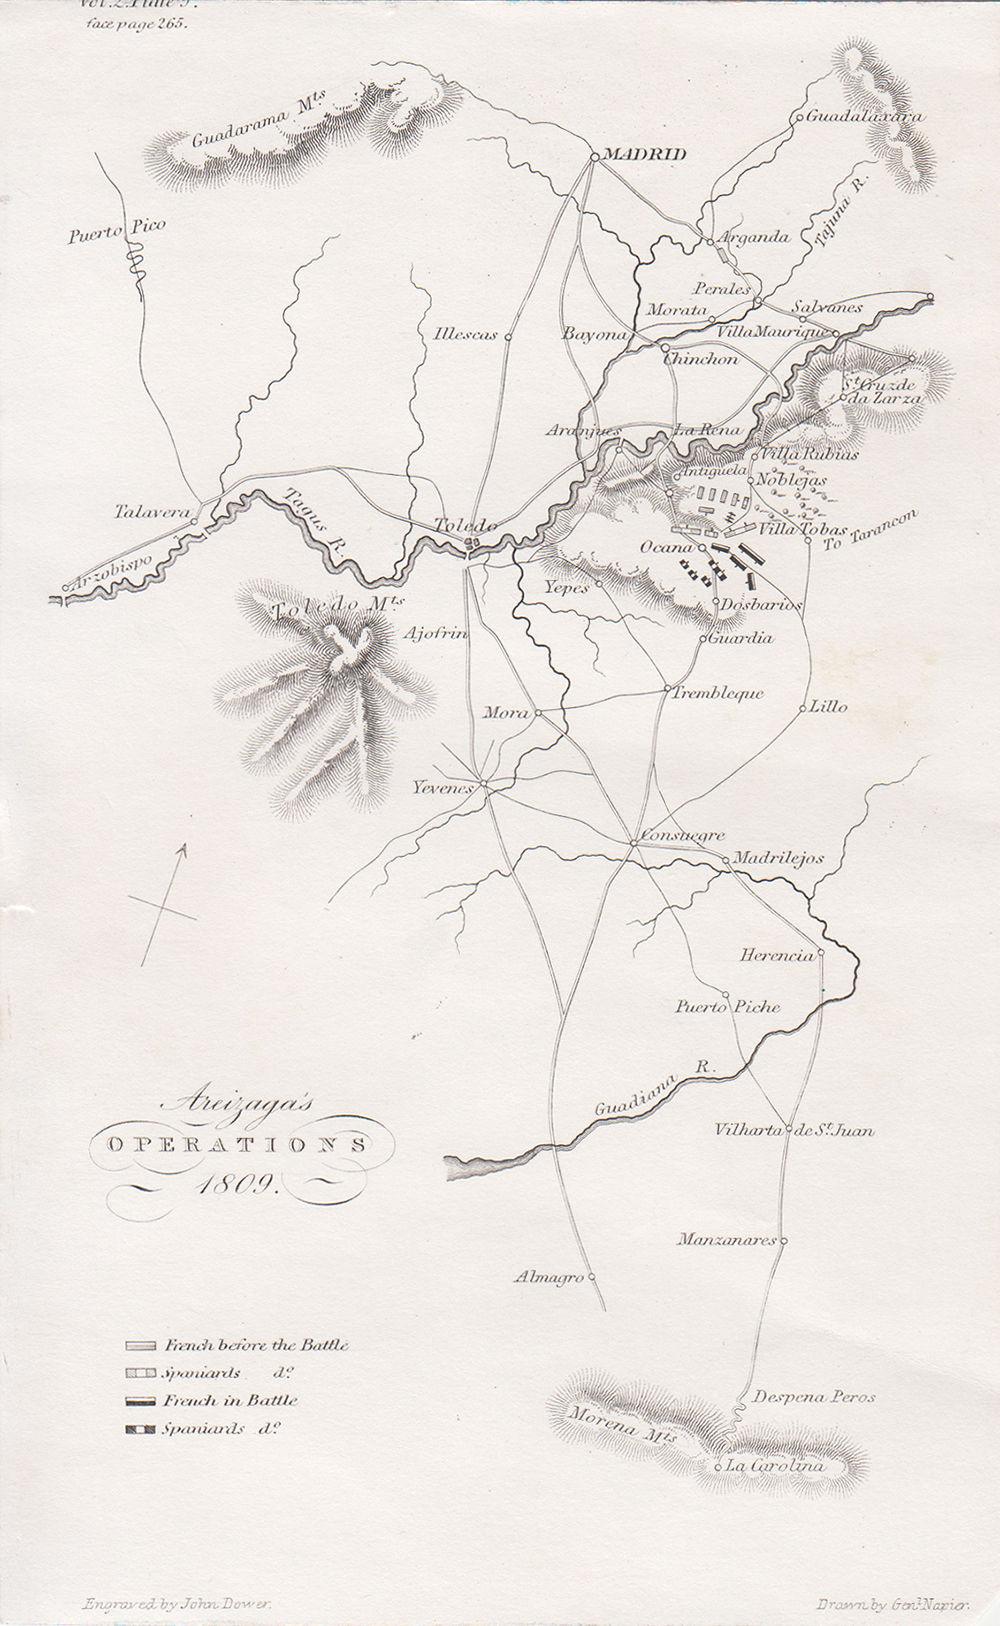 Areizaga's Operations 1809